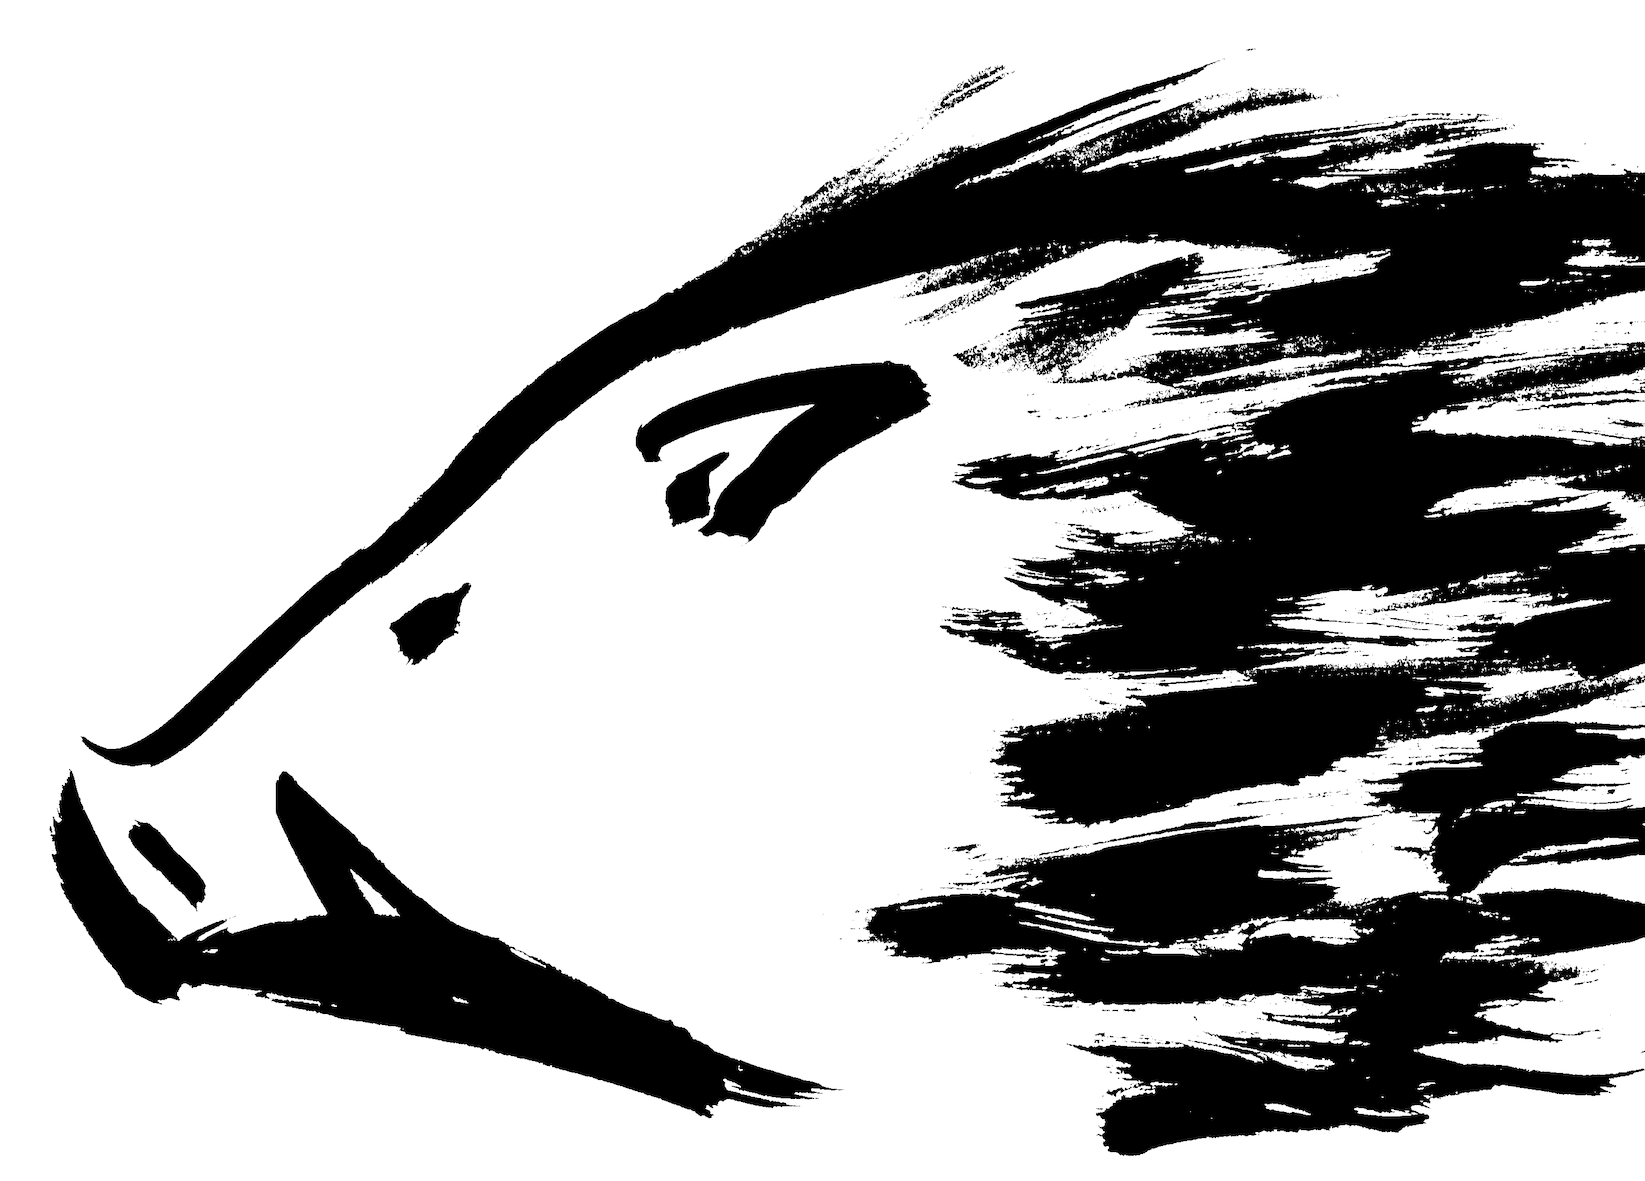 19年亥年 迫力のあるイノシシ横顔の墨絵イラスト 無料年賀状素材 無料イラスト配布サイトマンガトップ